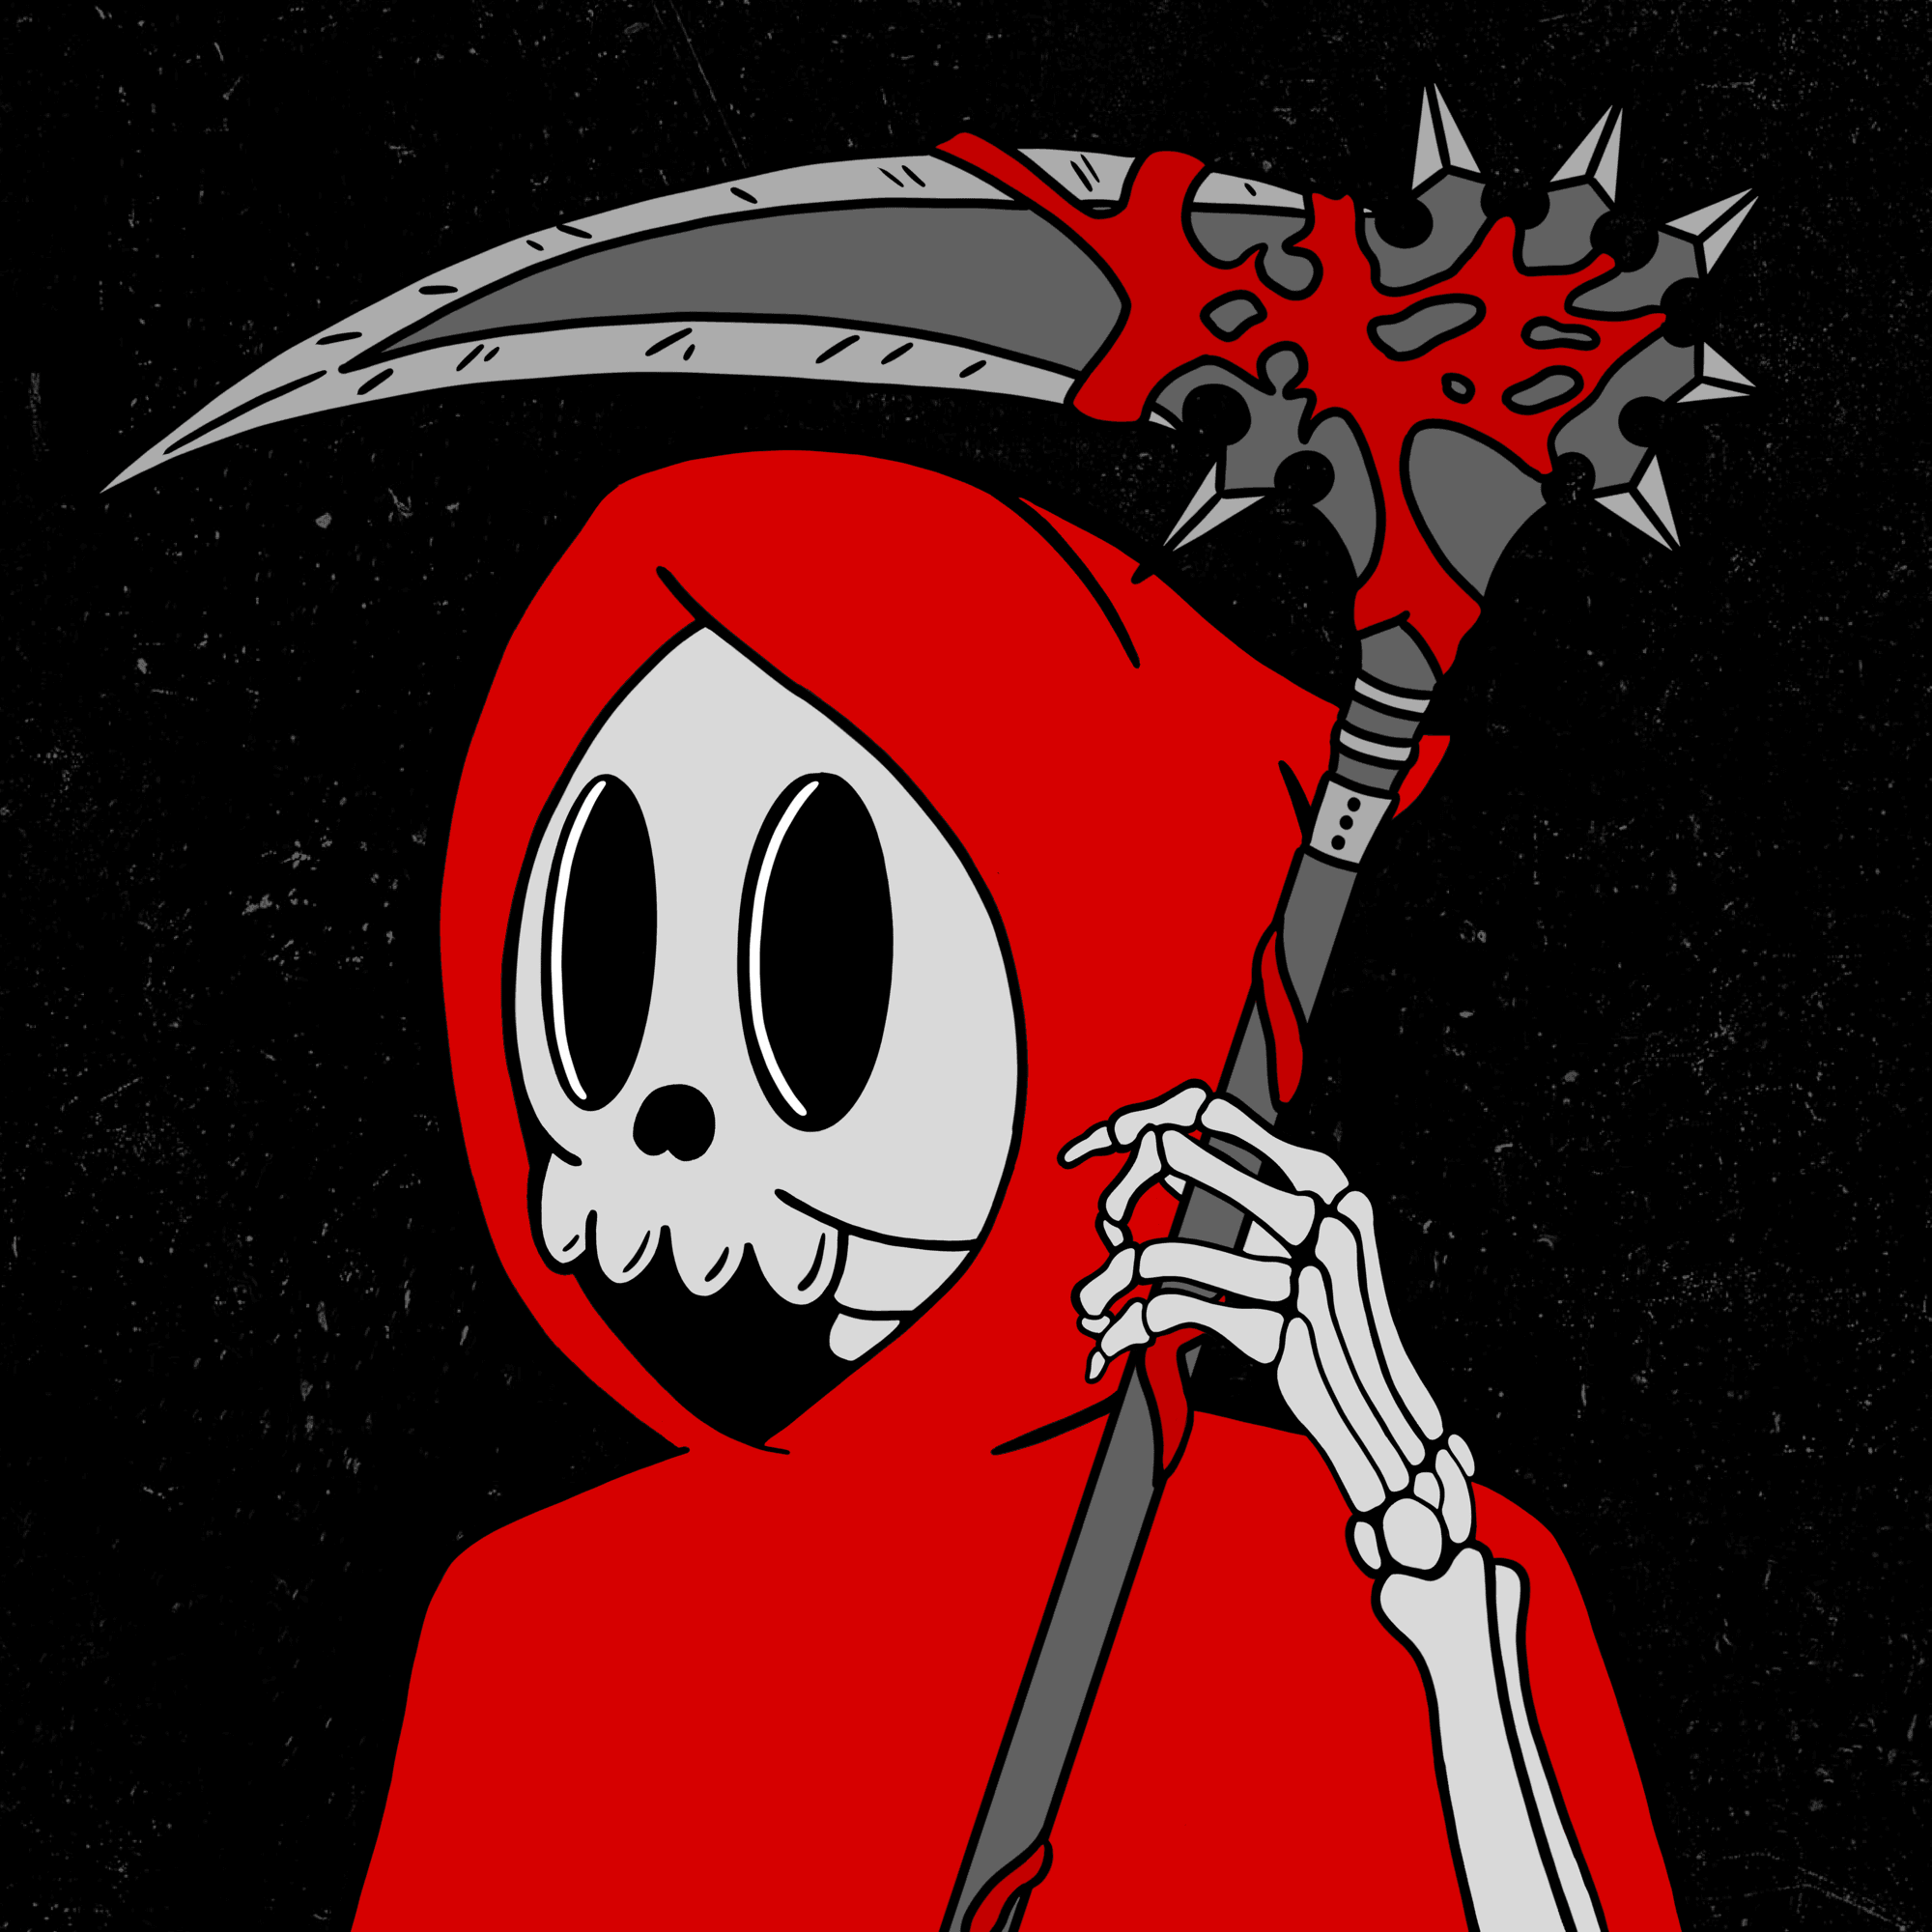 Skeleton 191: RED REAPER 